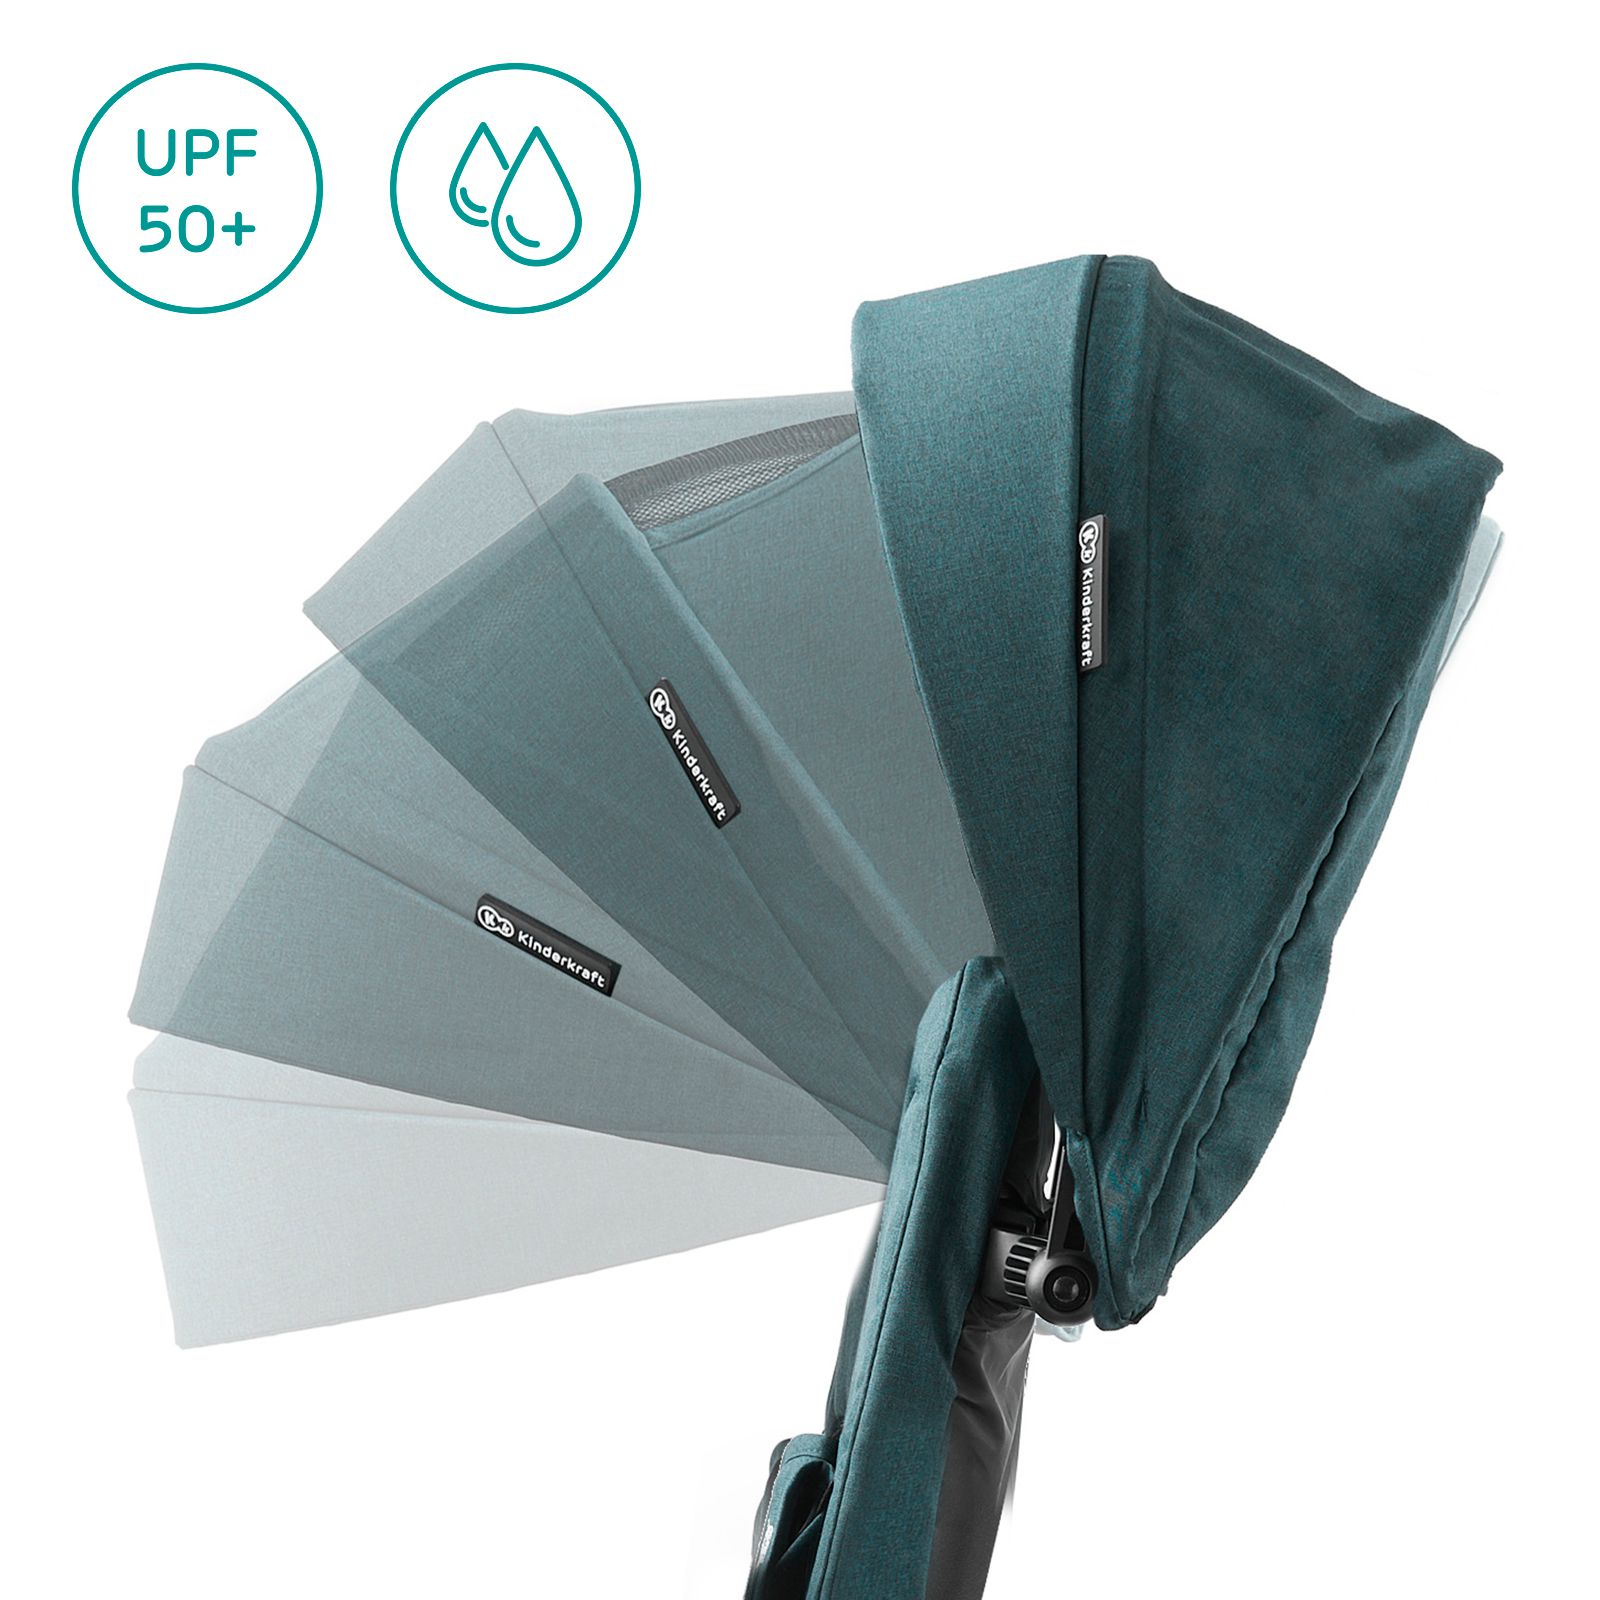 Capotta parasole regolabile per ogni condizione atmosferica	
